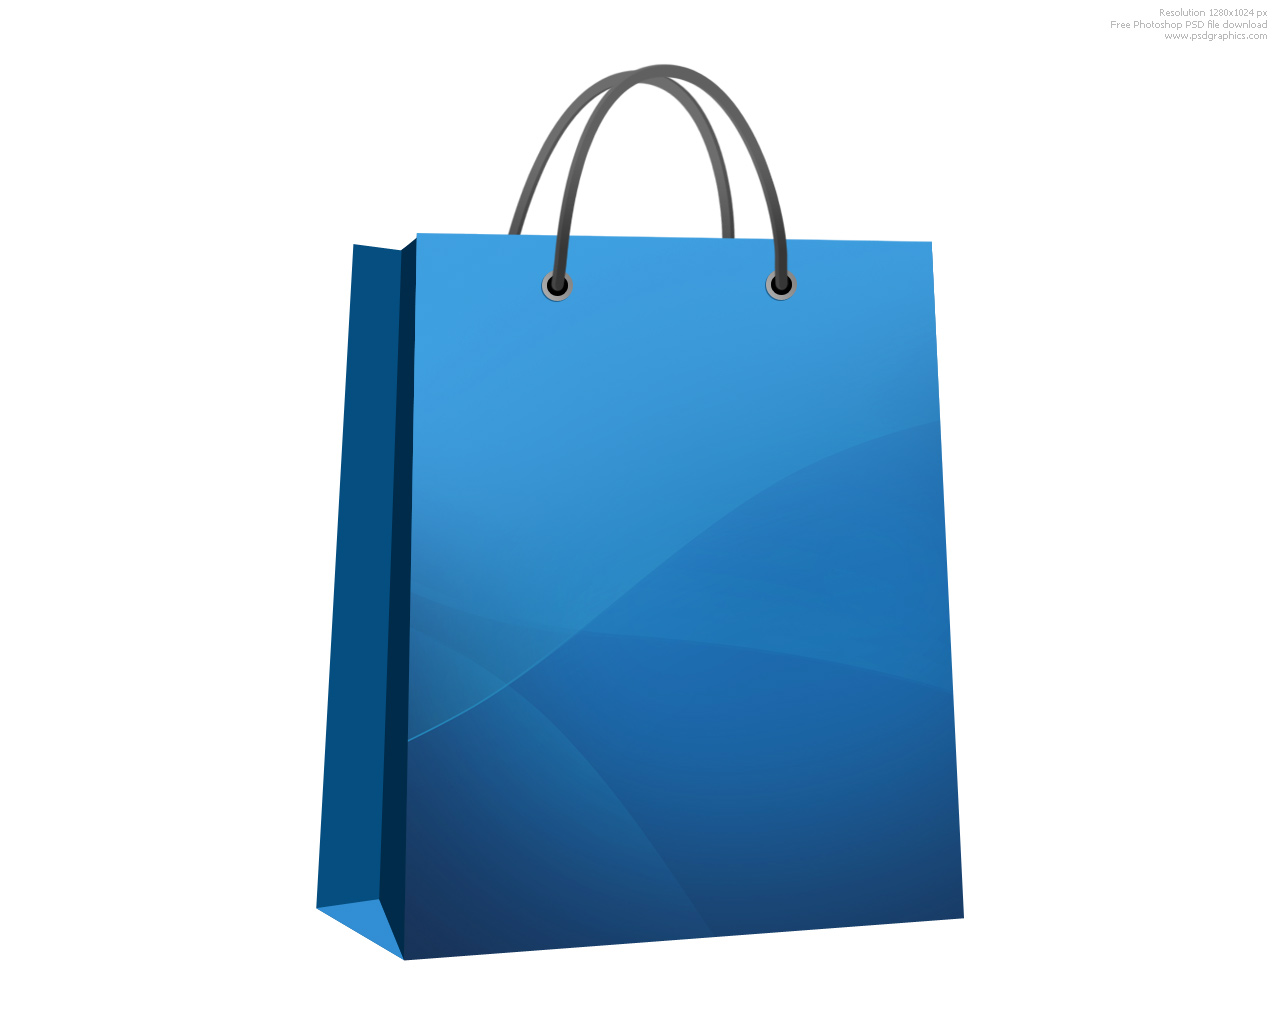 Shoppingbag HD PNG - 119995